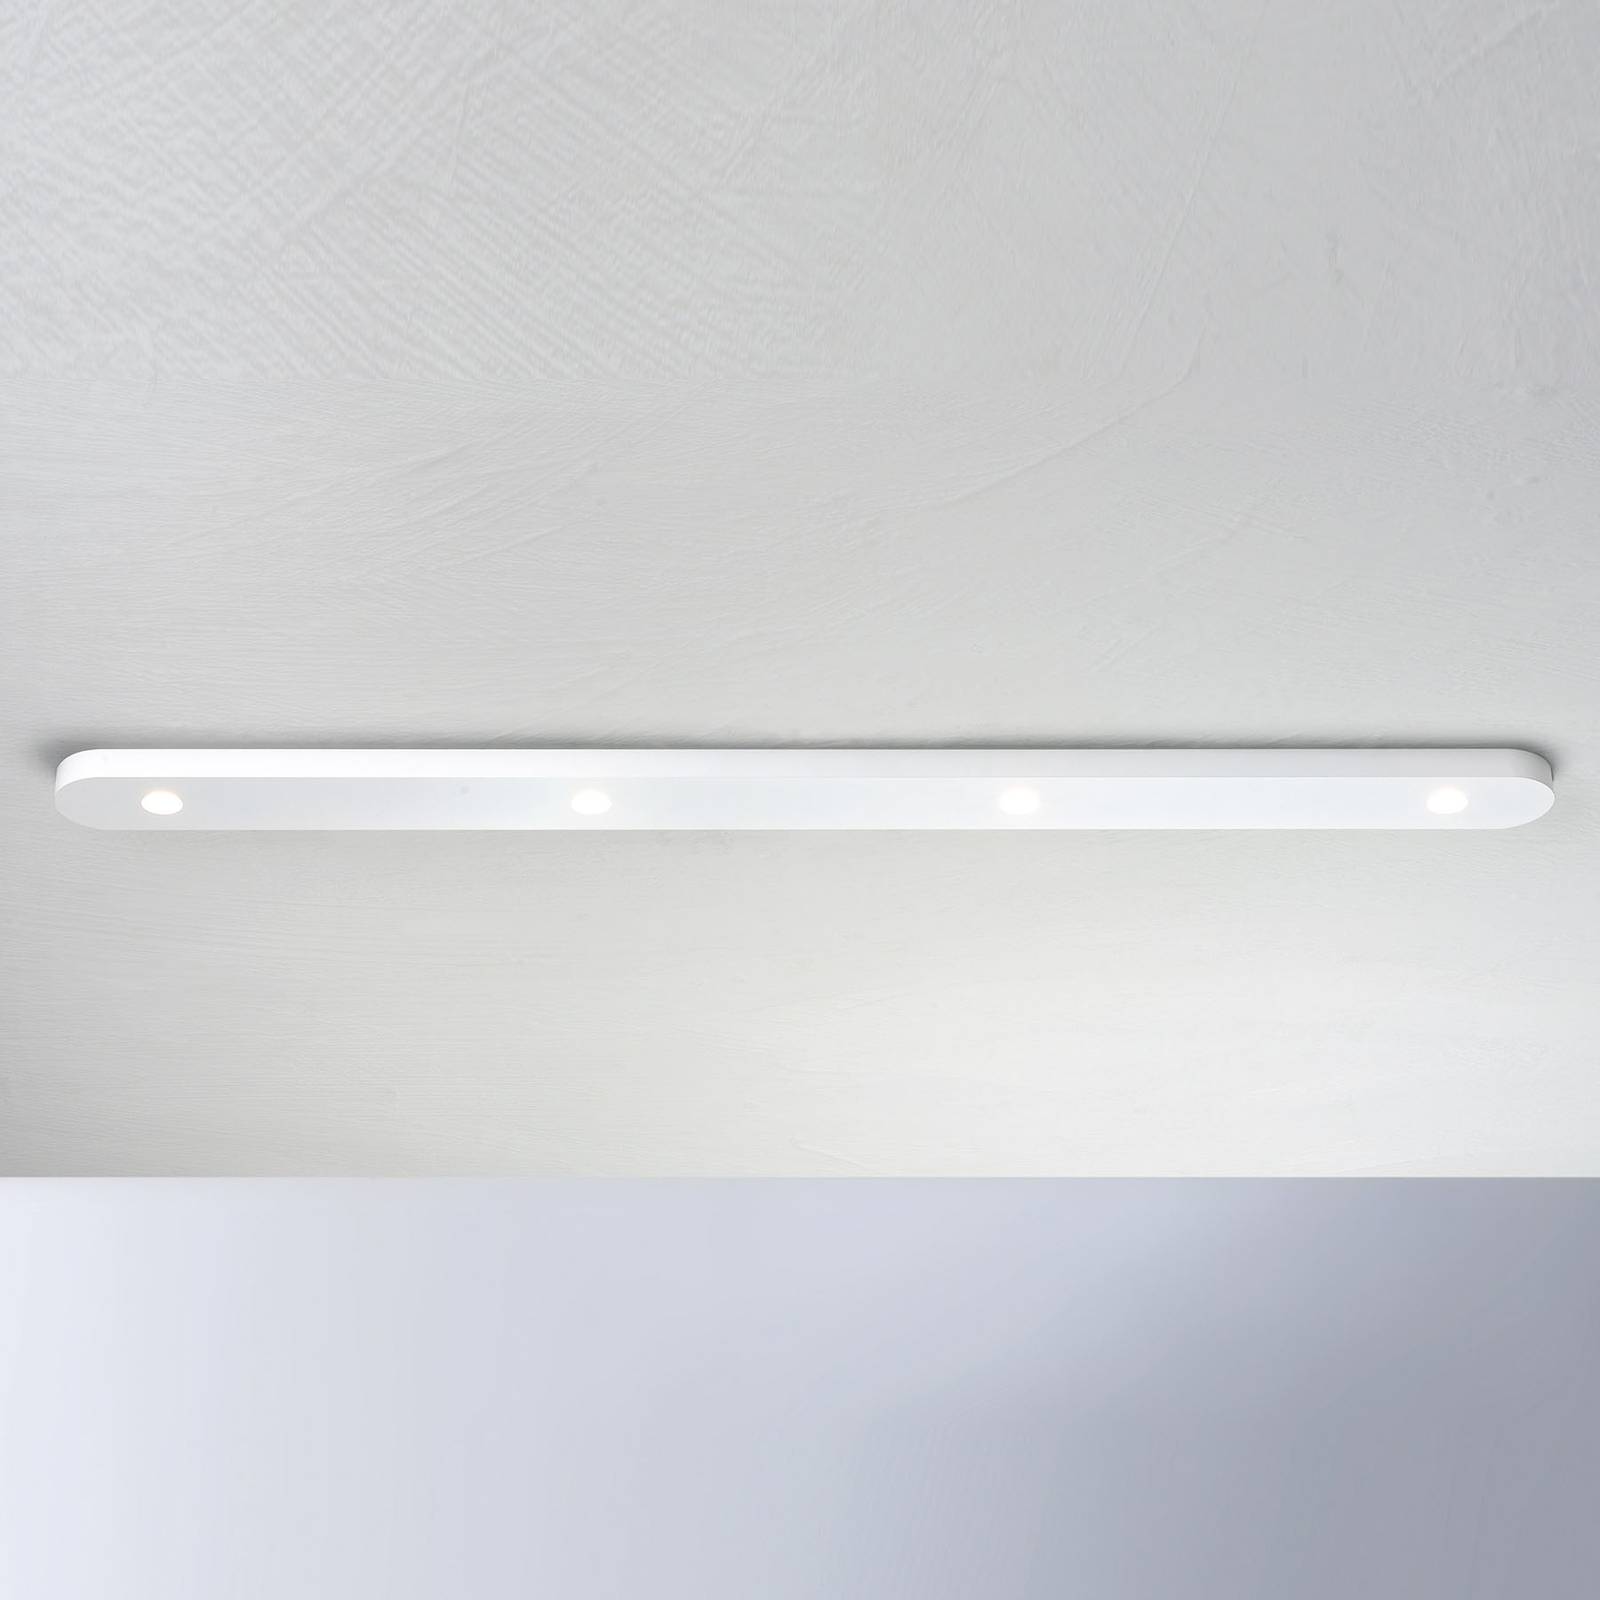 Bopp Close plafonnier LED à 4 lampes, blanc